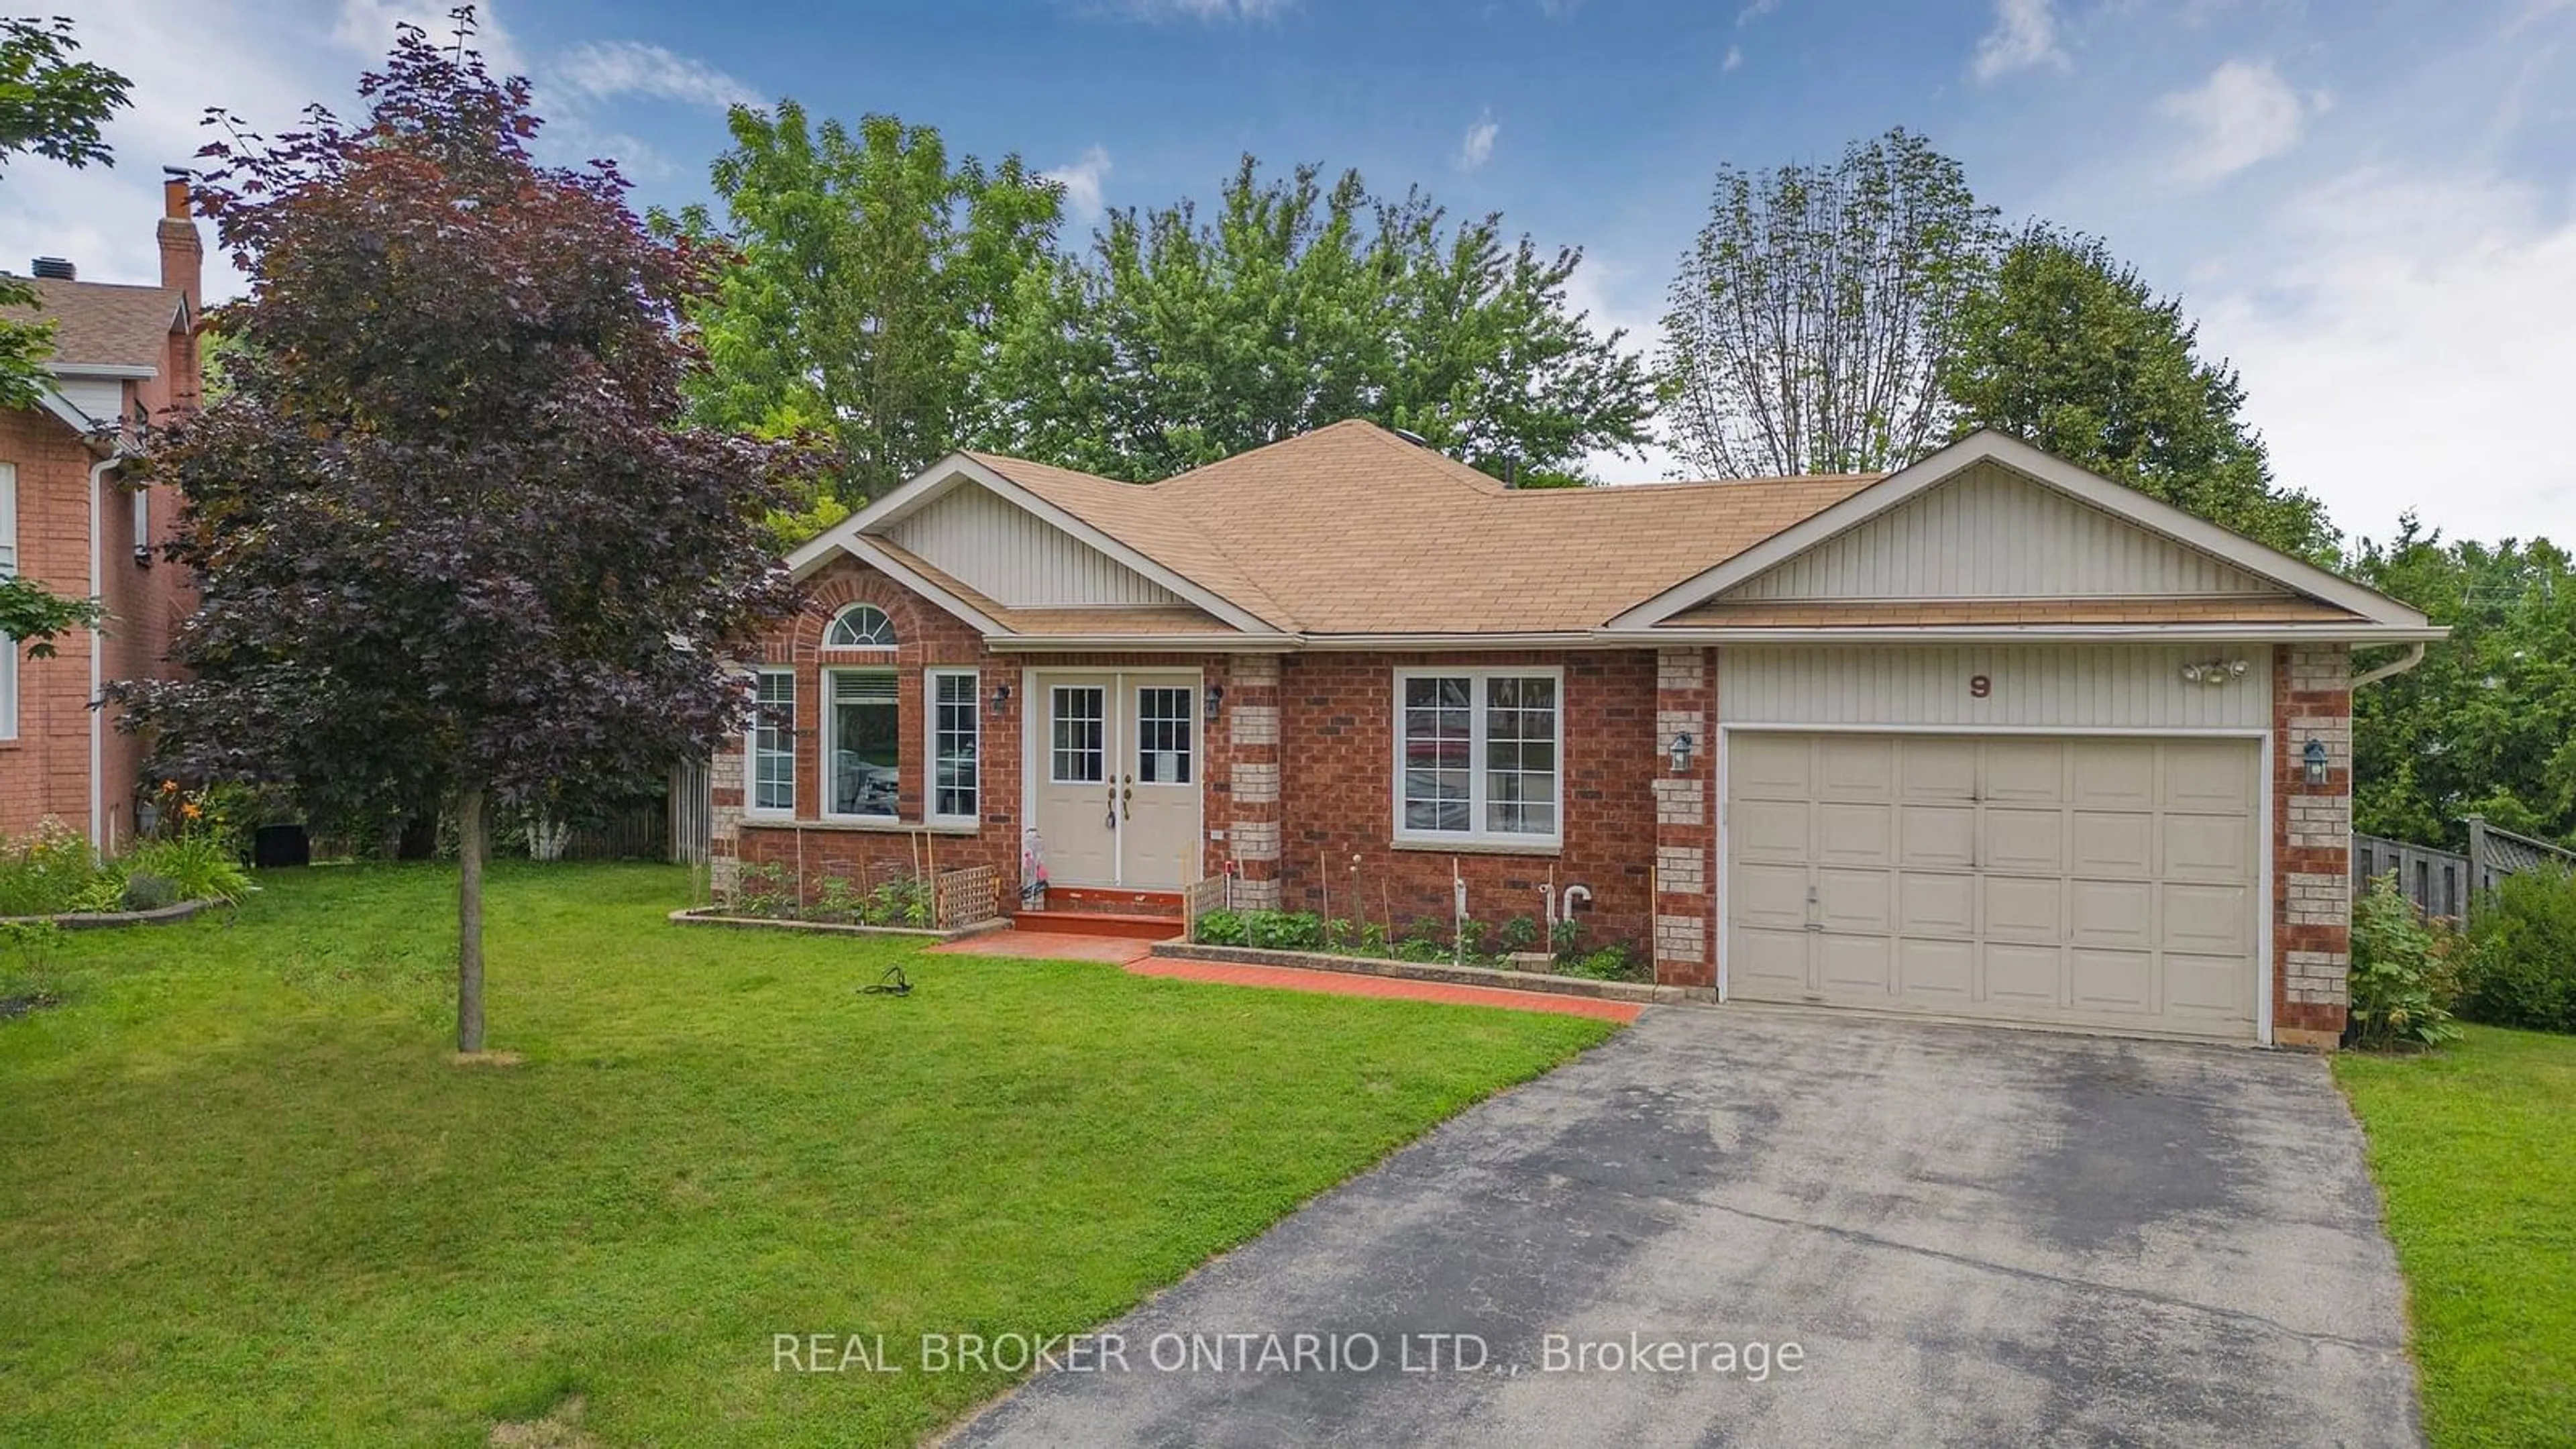 Home with brick exterior material for 9 Christina Crt, Essa Ontario L0M 1B5